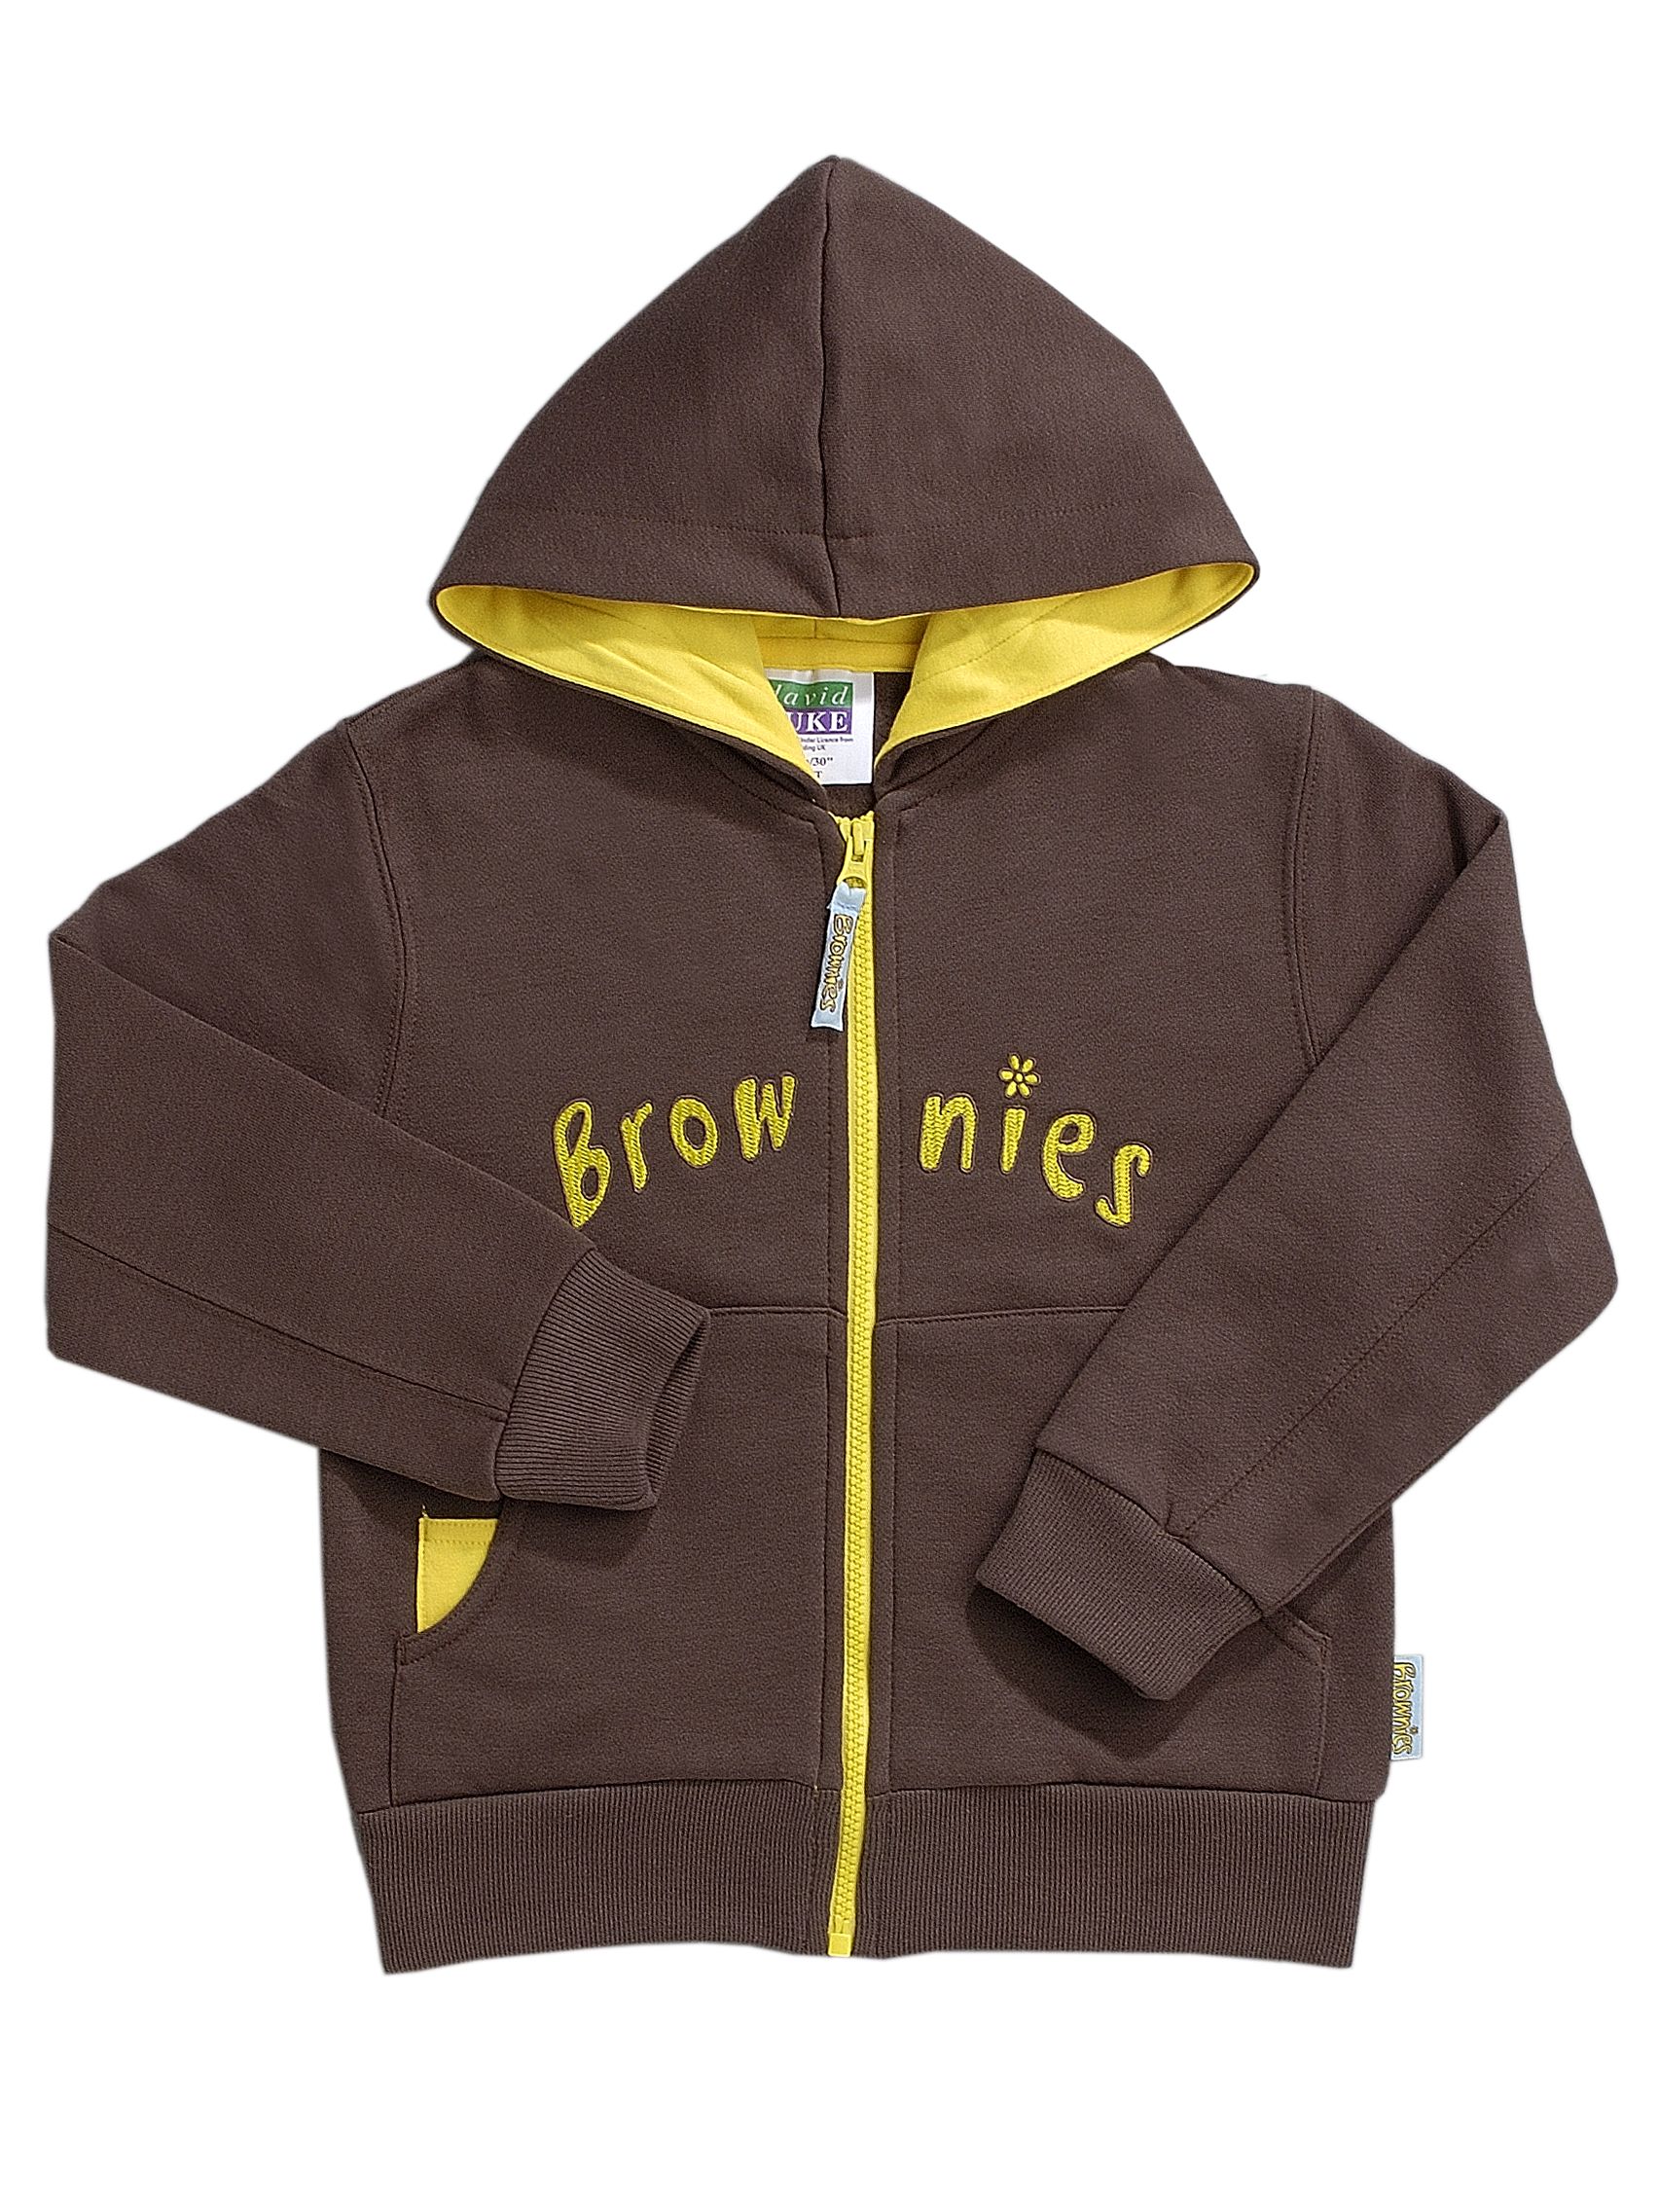 Buy Brownies Uniform Hooded Zipped Top, Brown Online at johnlewis.com